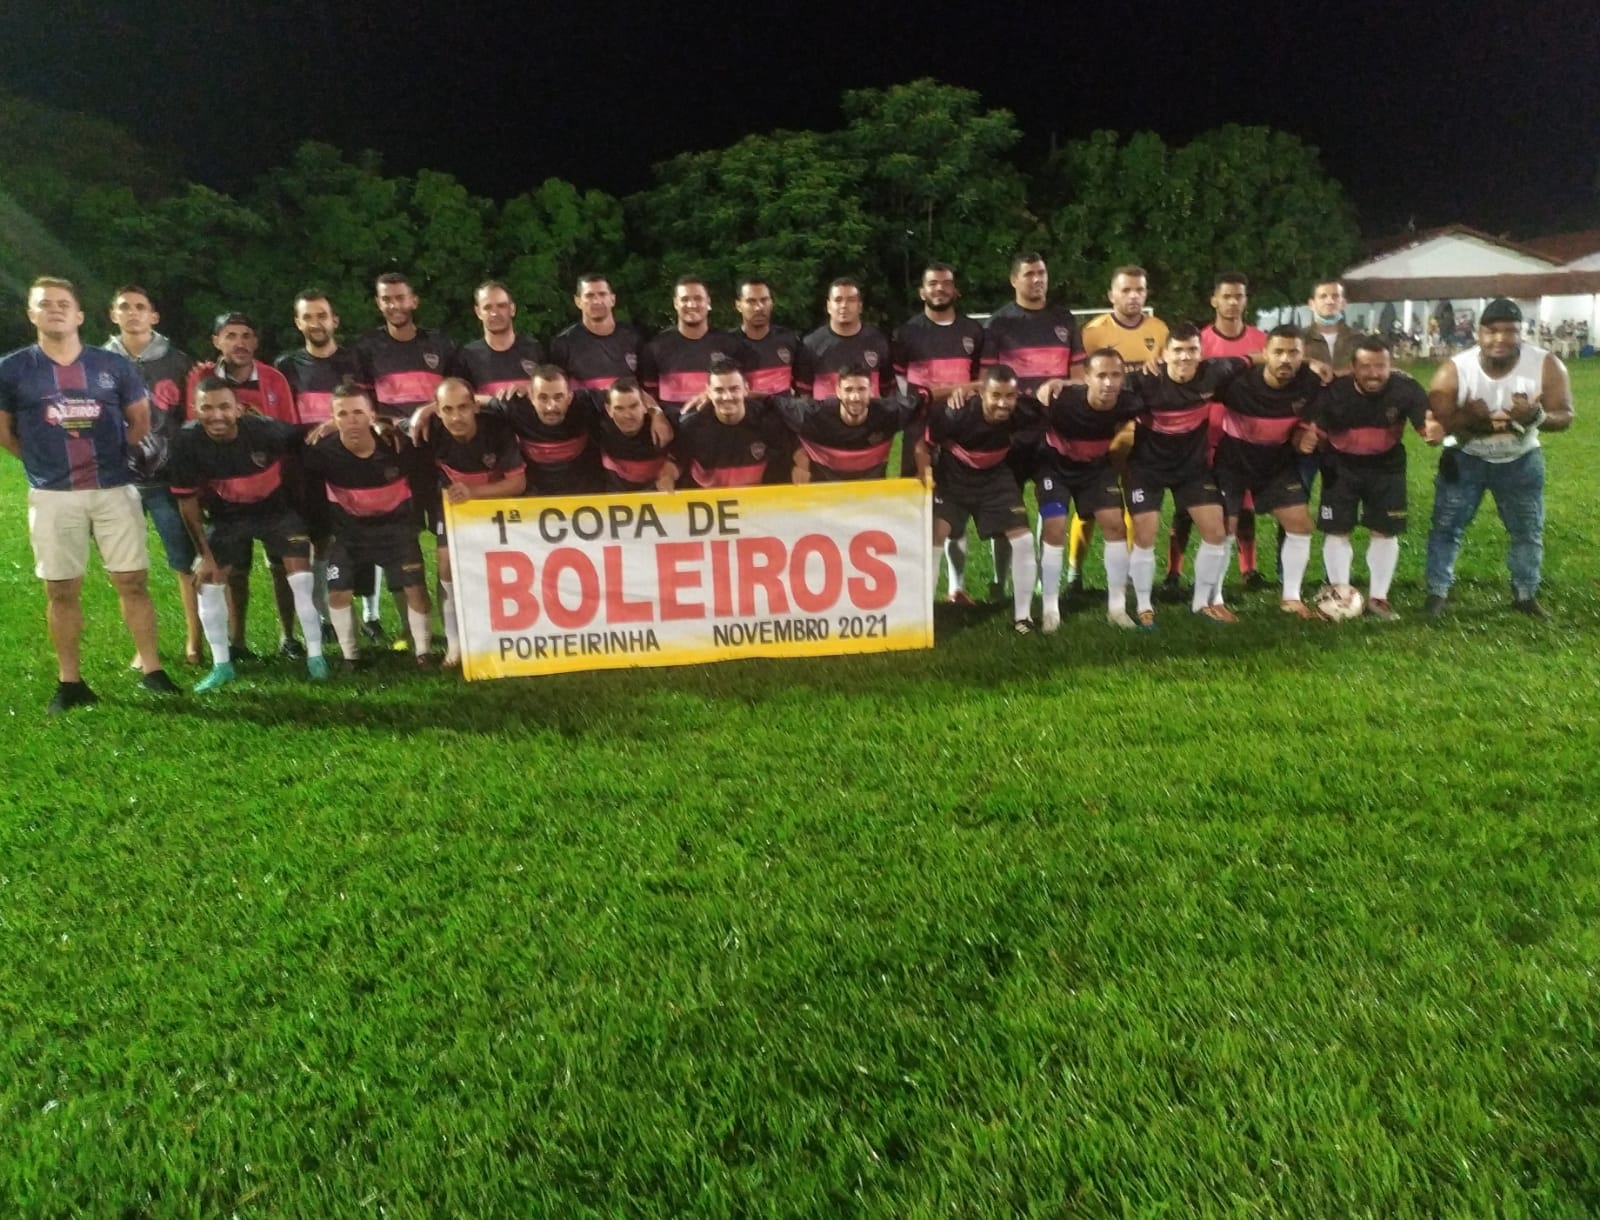 Empate dramático e goleada impiedosa marcam a abertura da 1º Copa de Boleiros no clube do Ferro Velho.